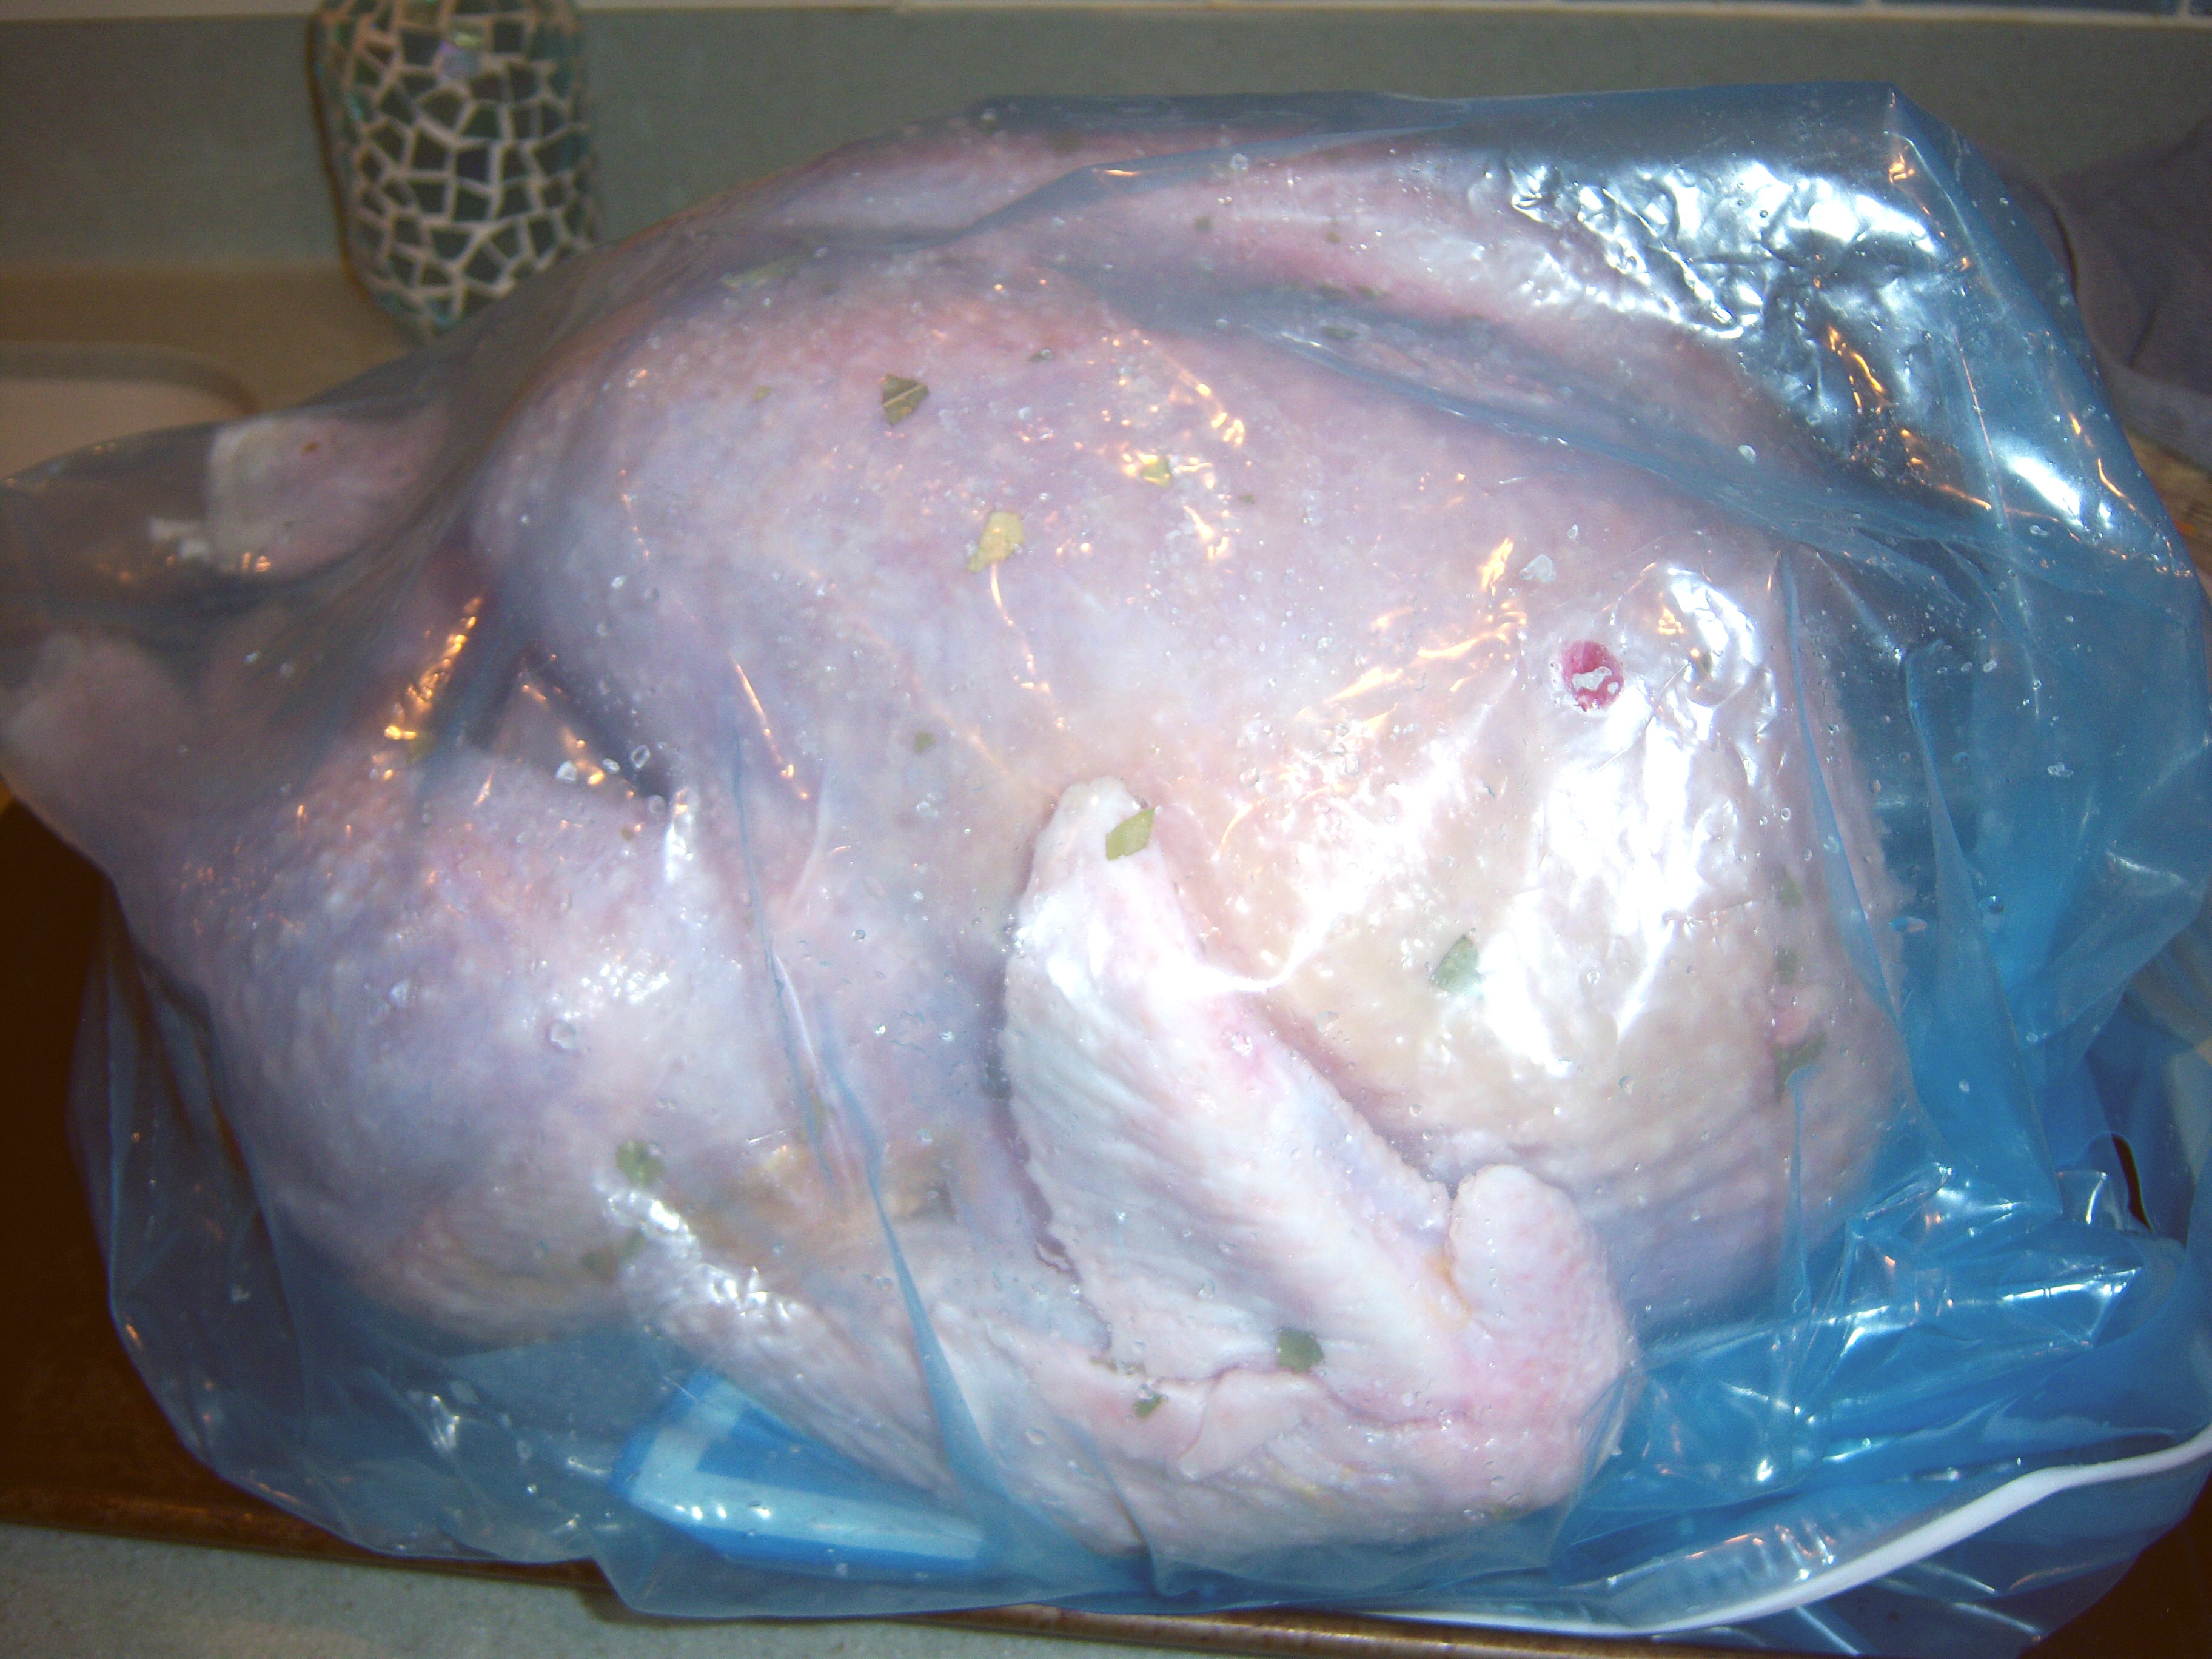 Turkey in a bag